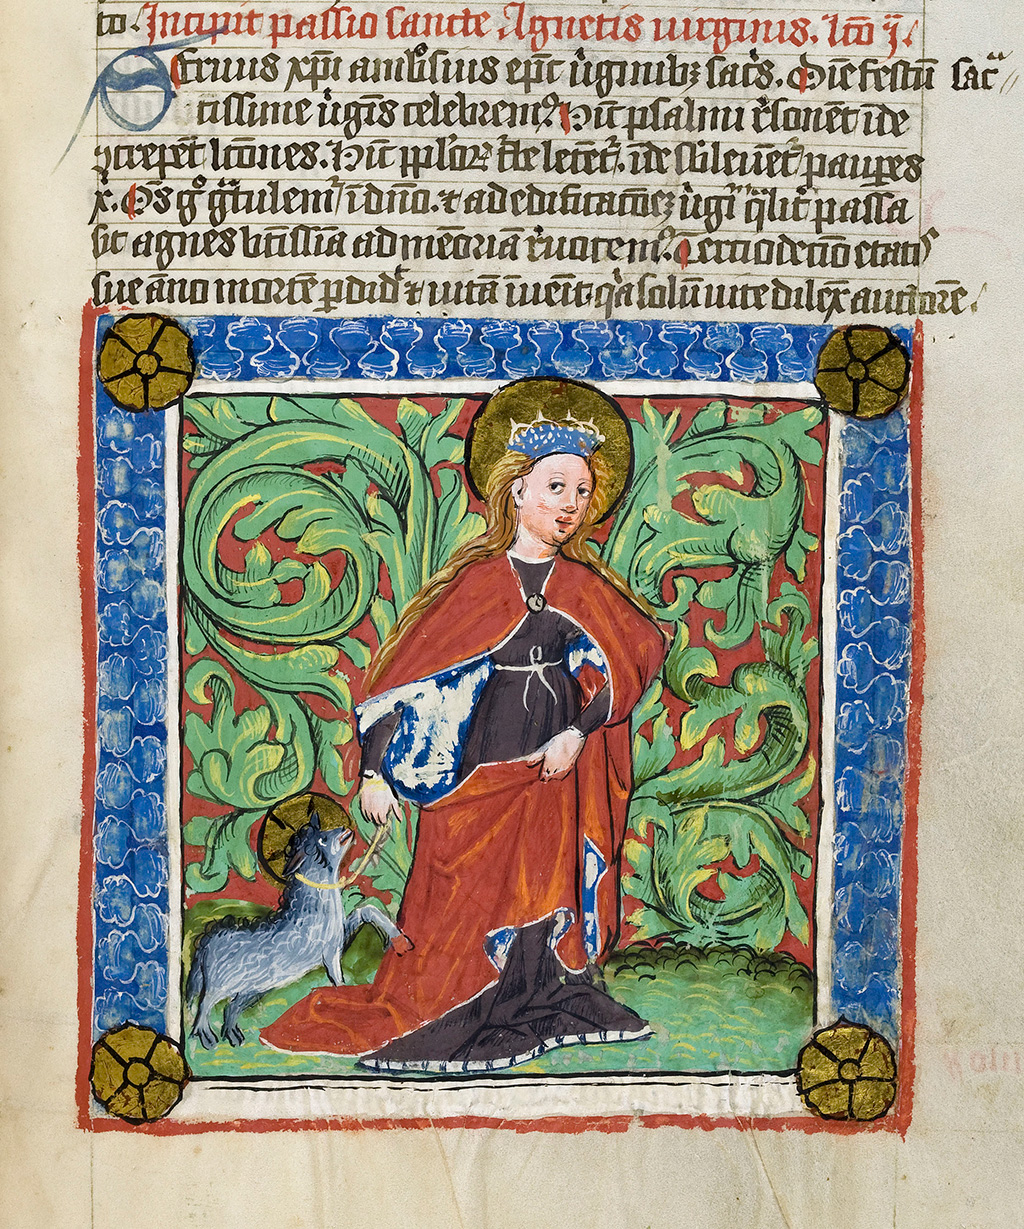 Zu sehen ist ein mittelalterlicher Mönche der eine Ziege an einer Leine führt. 